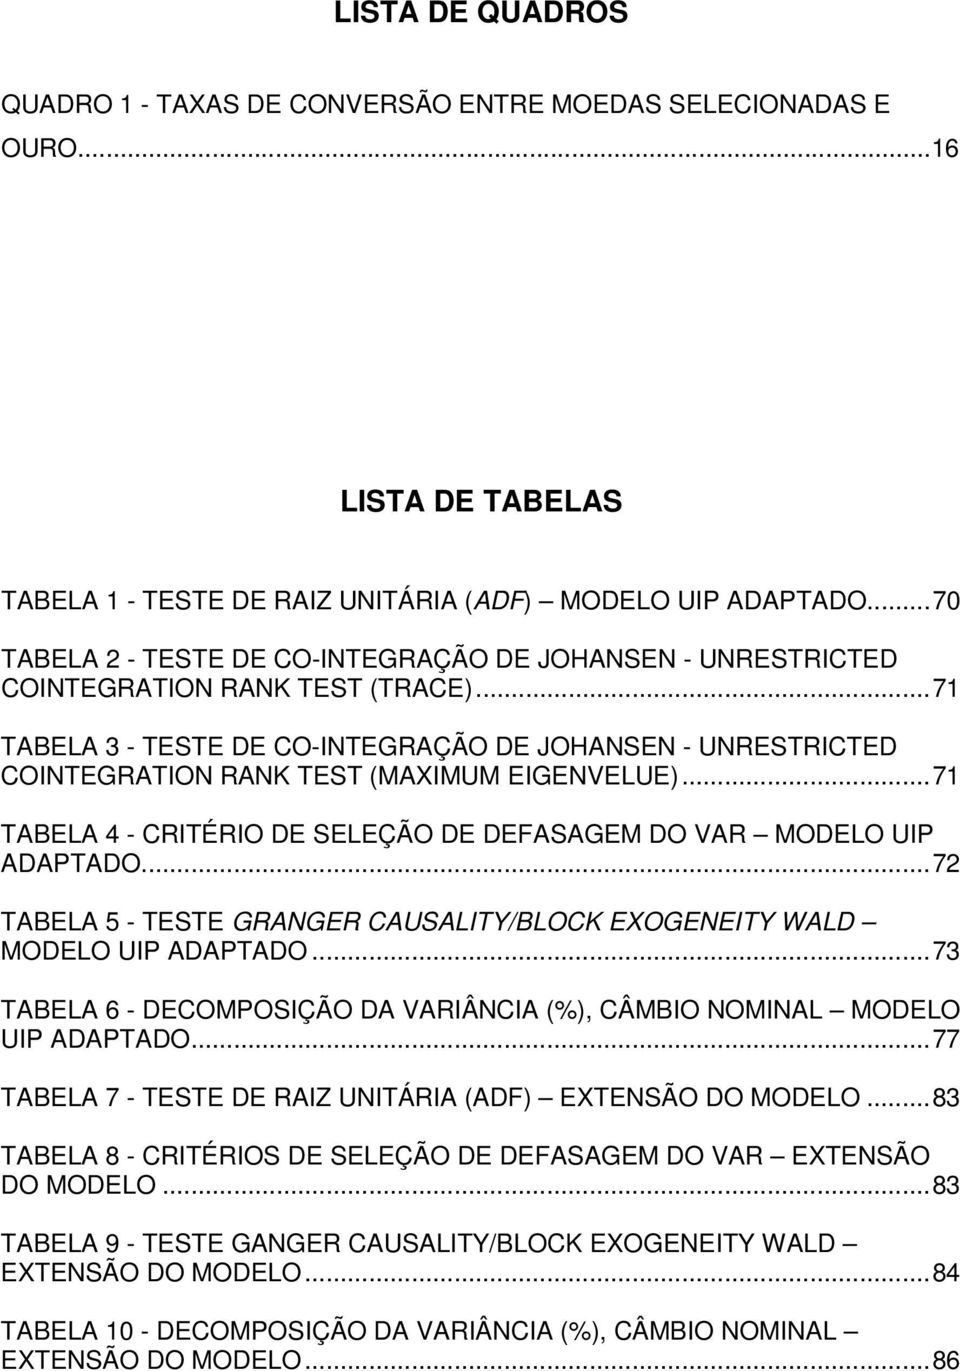 ..71 TABELA 3 - TESTE DE CO-INTEGRAÇÃO DE JOHANSEN - UNRESTRICTED COINTEGRATION RANK TEST (MAXIMUM EIGENVELUE)...71 TABELA 4 - CRITÉRIO DE SELEÇÃO DE DEFASAGEM DO VAR MODELO UIP ADAPTADO.